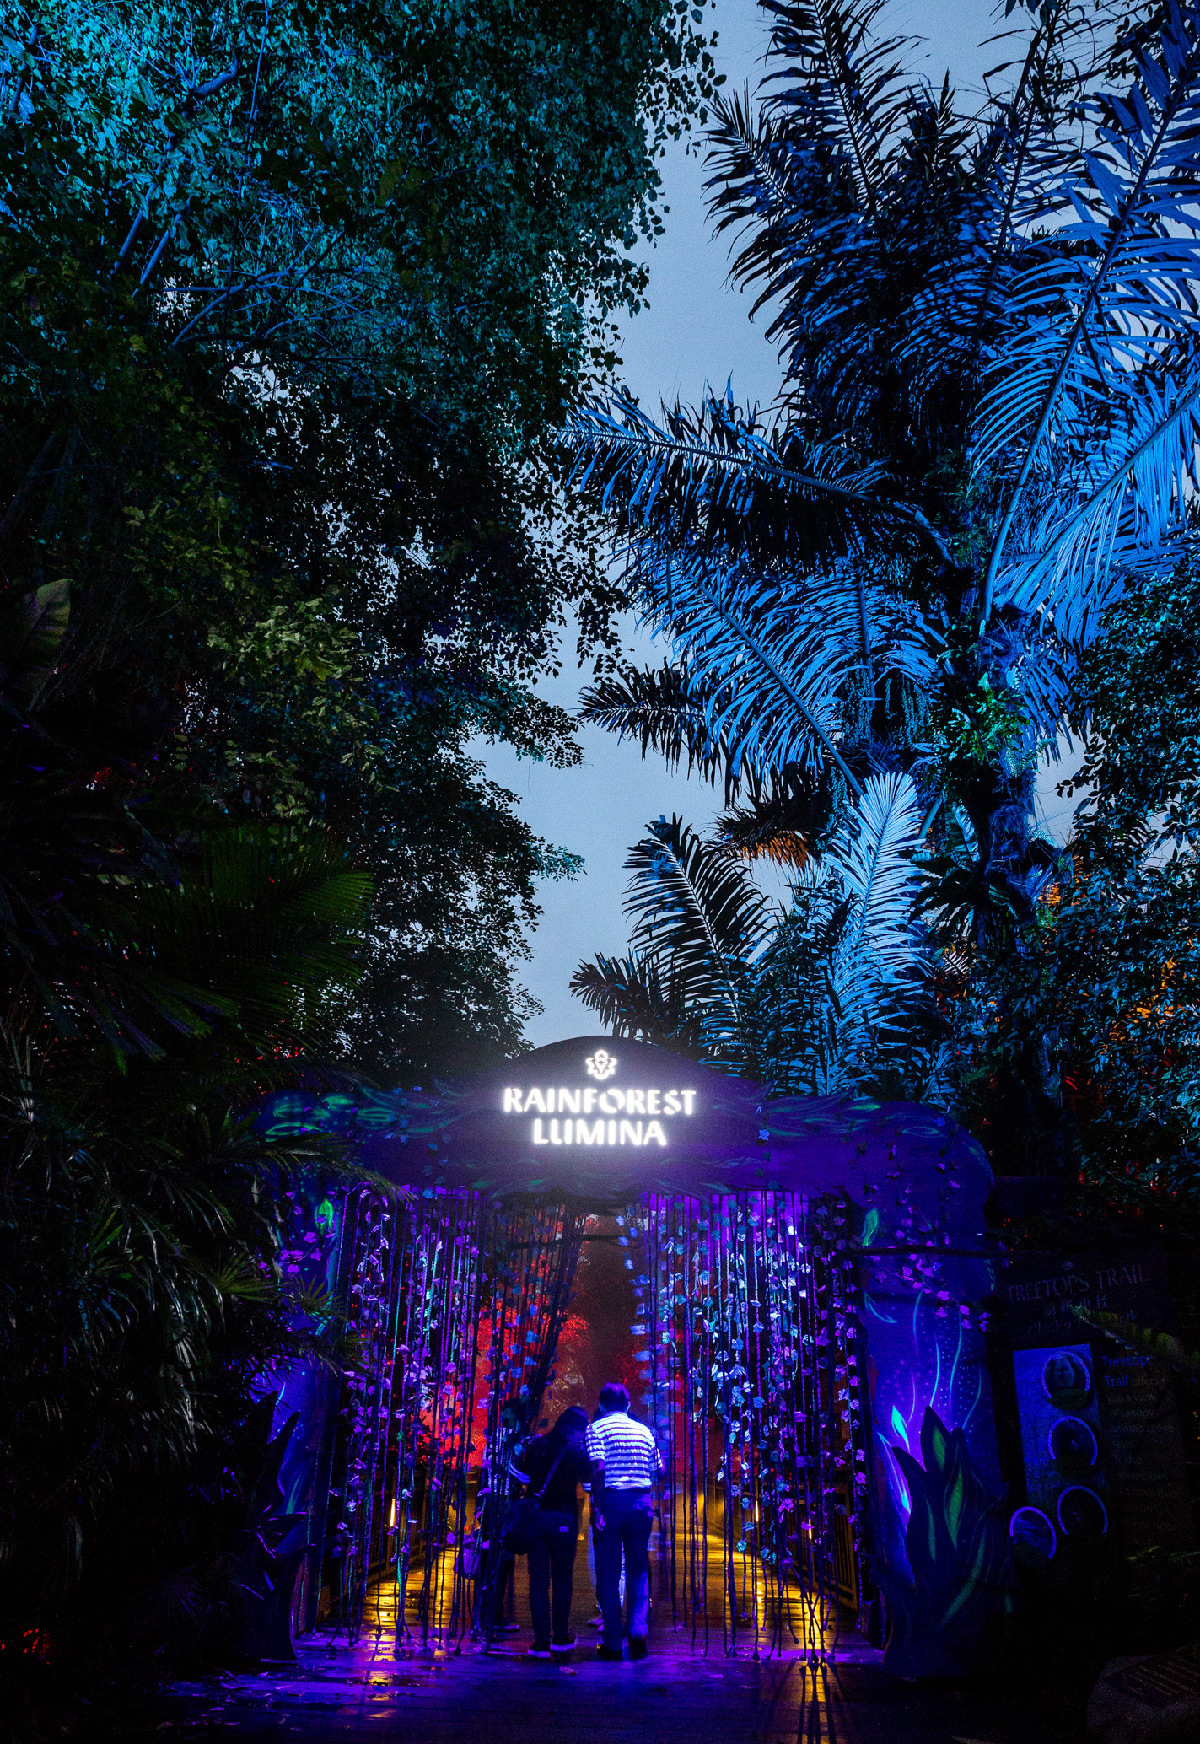 Rainforest Lumina, zoo de Singapour - Parcours multimédia nocturne, 2018